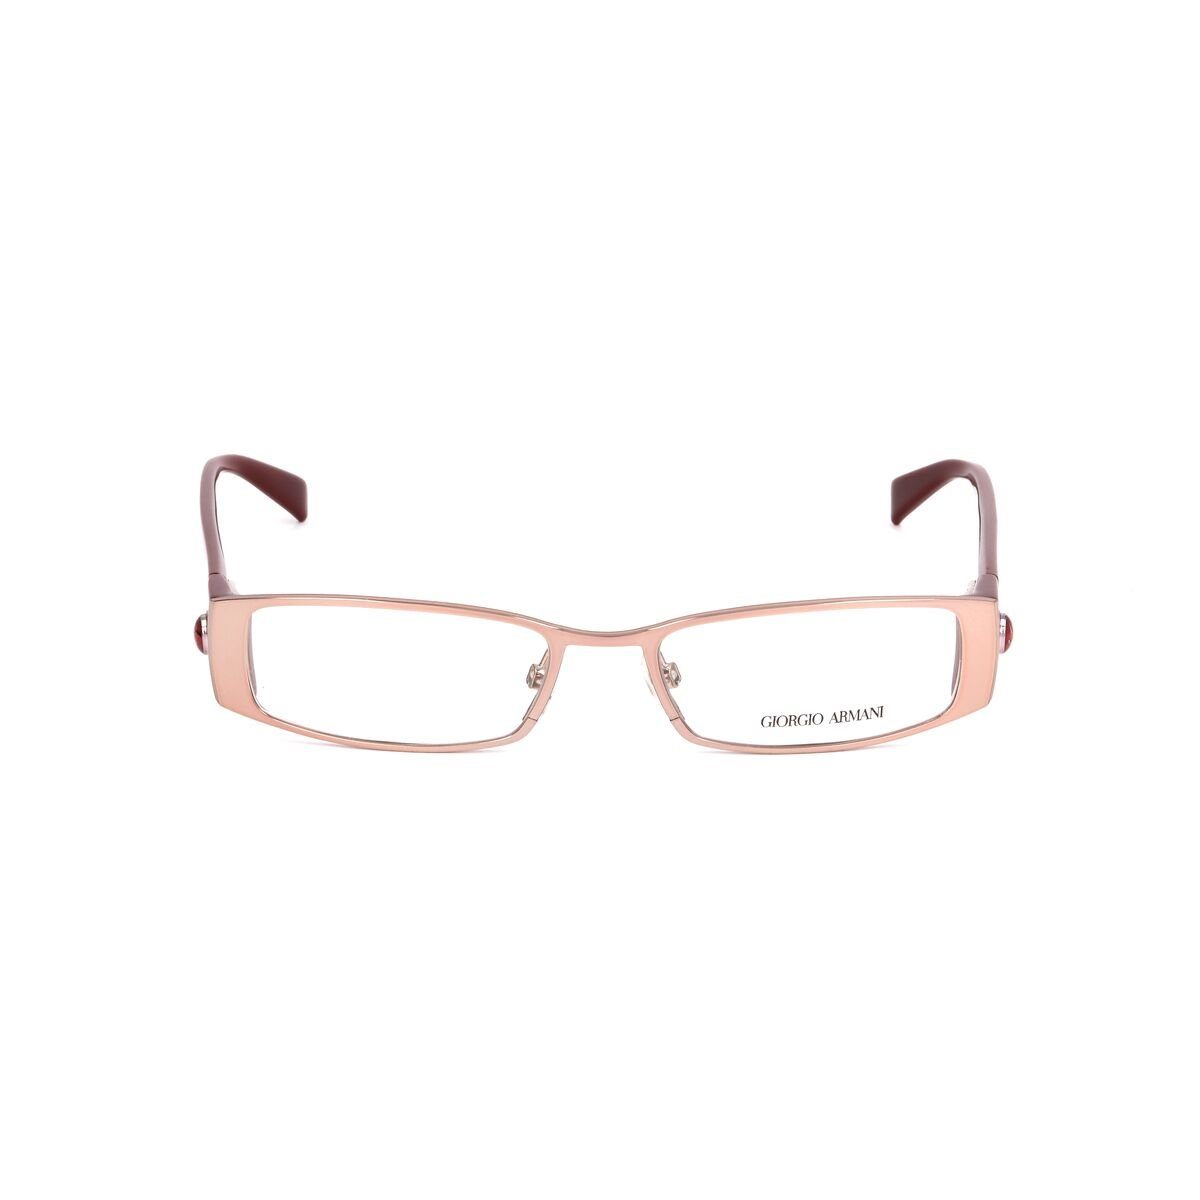 Giorgio Armani Brillengestell Brillenfassung Armani GA-641-NVS Gold Brille  ohne Sehstärke Brillenges